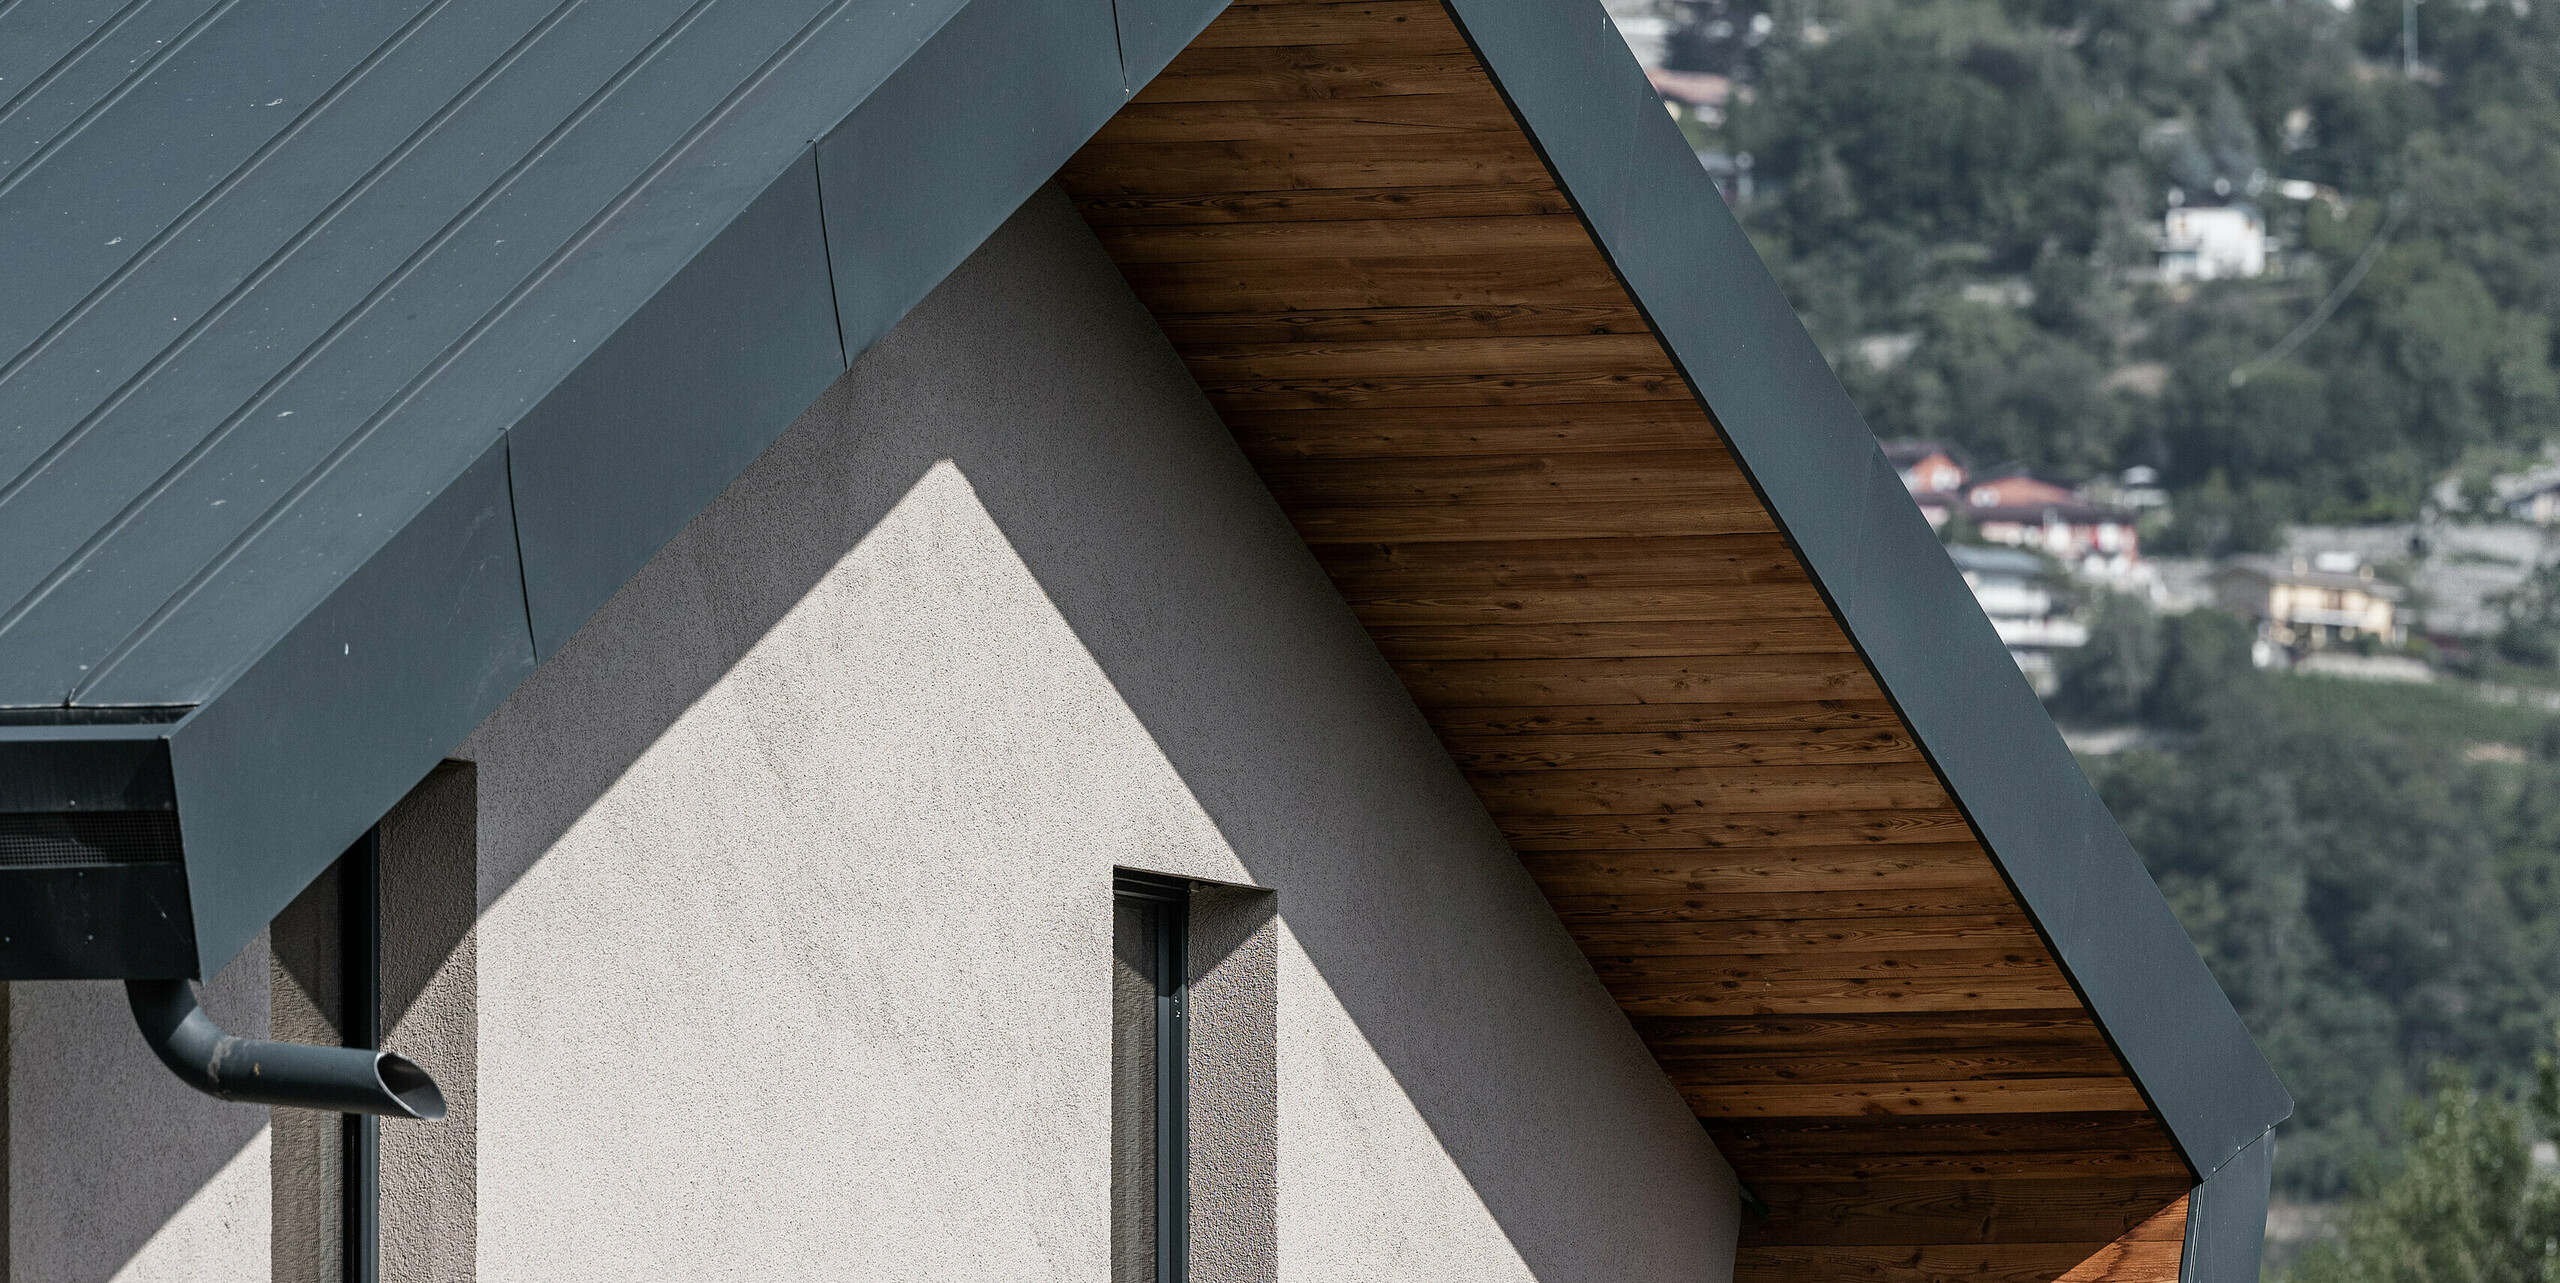 Detailný pohľad na vilu Tia v Taliansku, vybavenú kompletným systémom PREFA. Pohľad zobrazuje hliníkový obklad PREFALZ vo farbe P.10 antracitová, ktorý elegantne zvýrazňuje teplé drevené podkonštrukcie. Precízne spracovanie a moderný dizajn odrážajú kvalitu hliníkových výrobkov PREFA, ktoré sú známe svojou odolnosťou a estetikou.